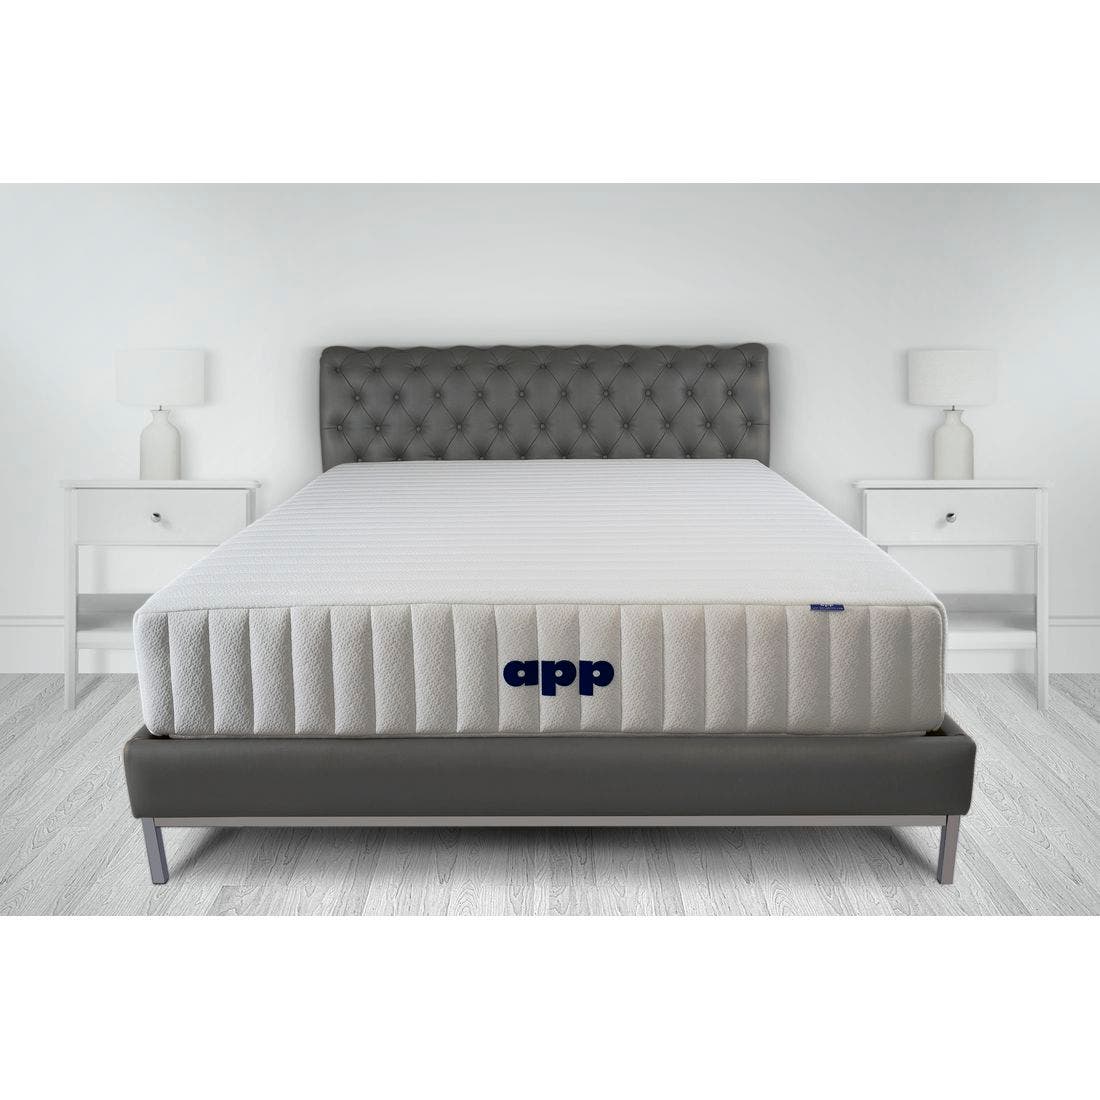 39015038-mattress-bedding-mattresses-pocket-spring-mattress-31